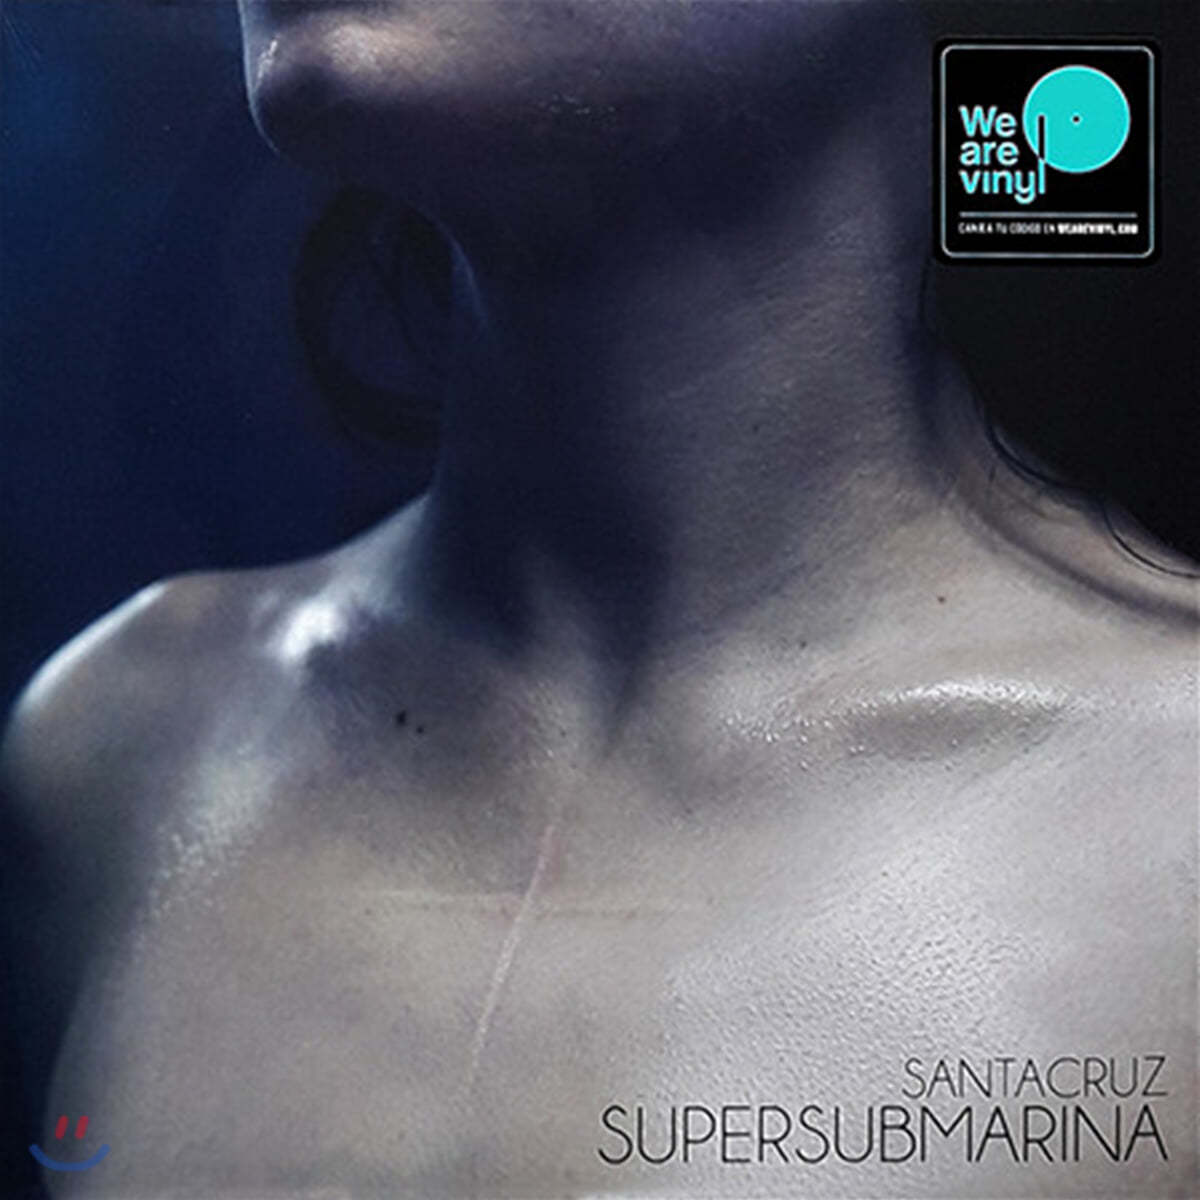 Supersubmarina (슈퍼서브마리나) - Santacruz [LP] 